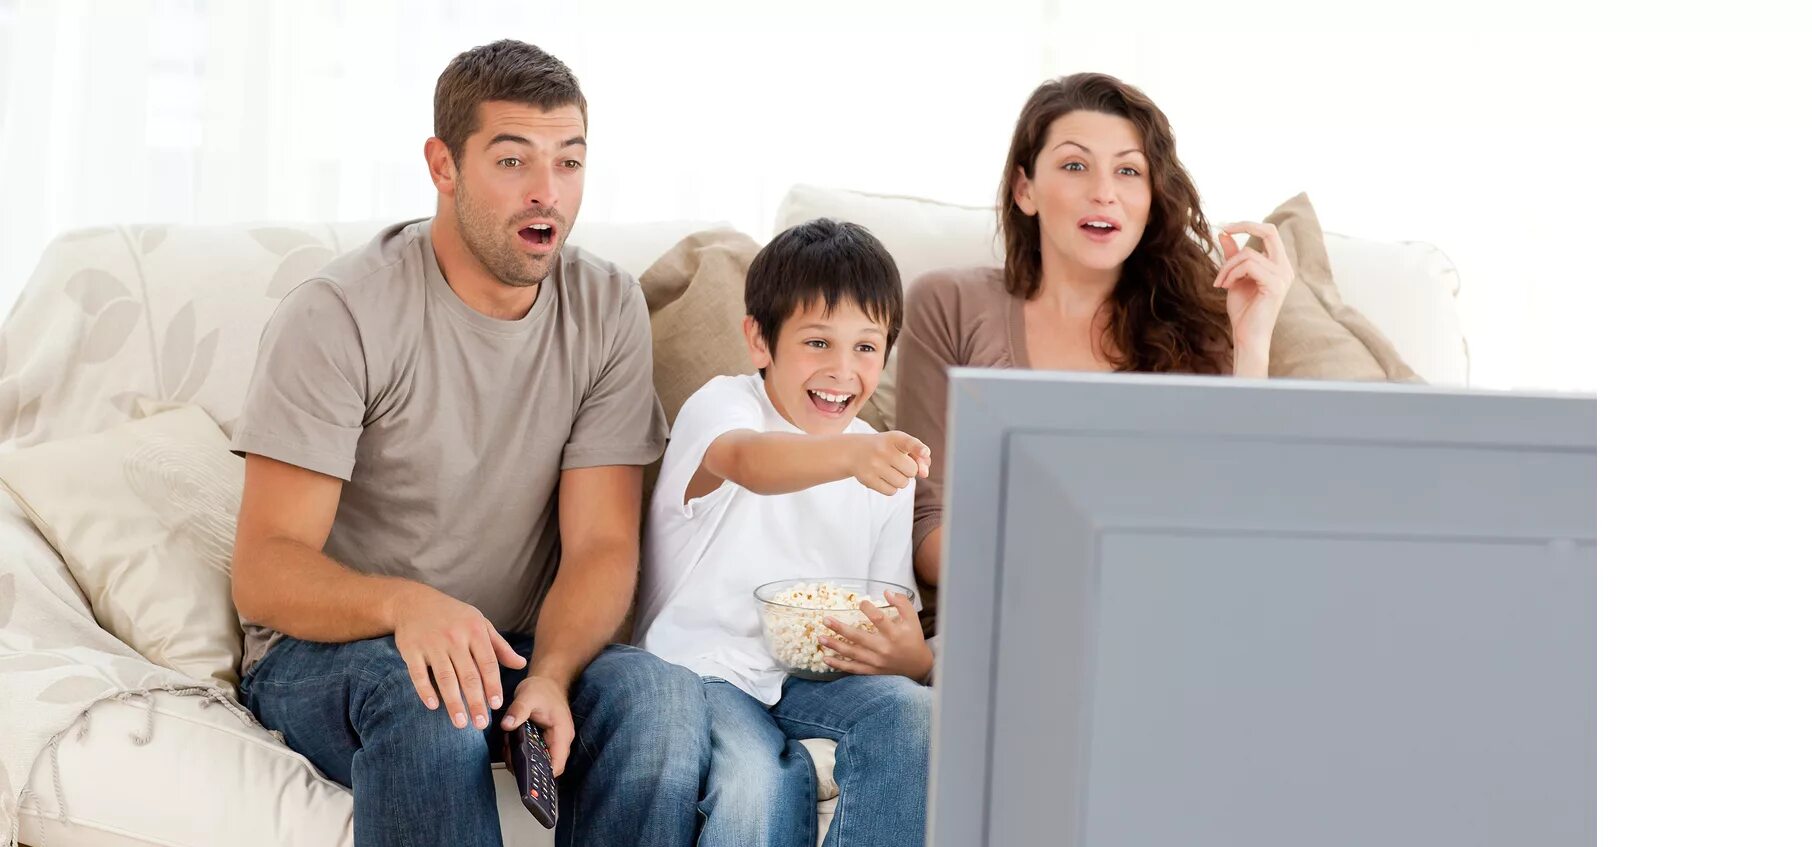 Семья у телевизора. Семья на диване перед телевизором. Семья смотрит телевизор. Счастливая семья у телевизора.